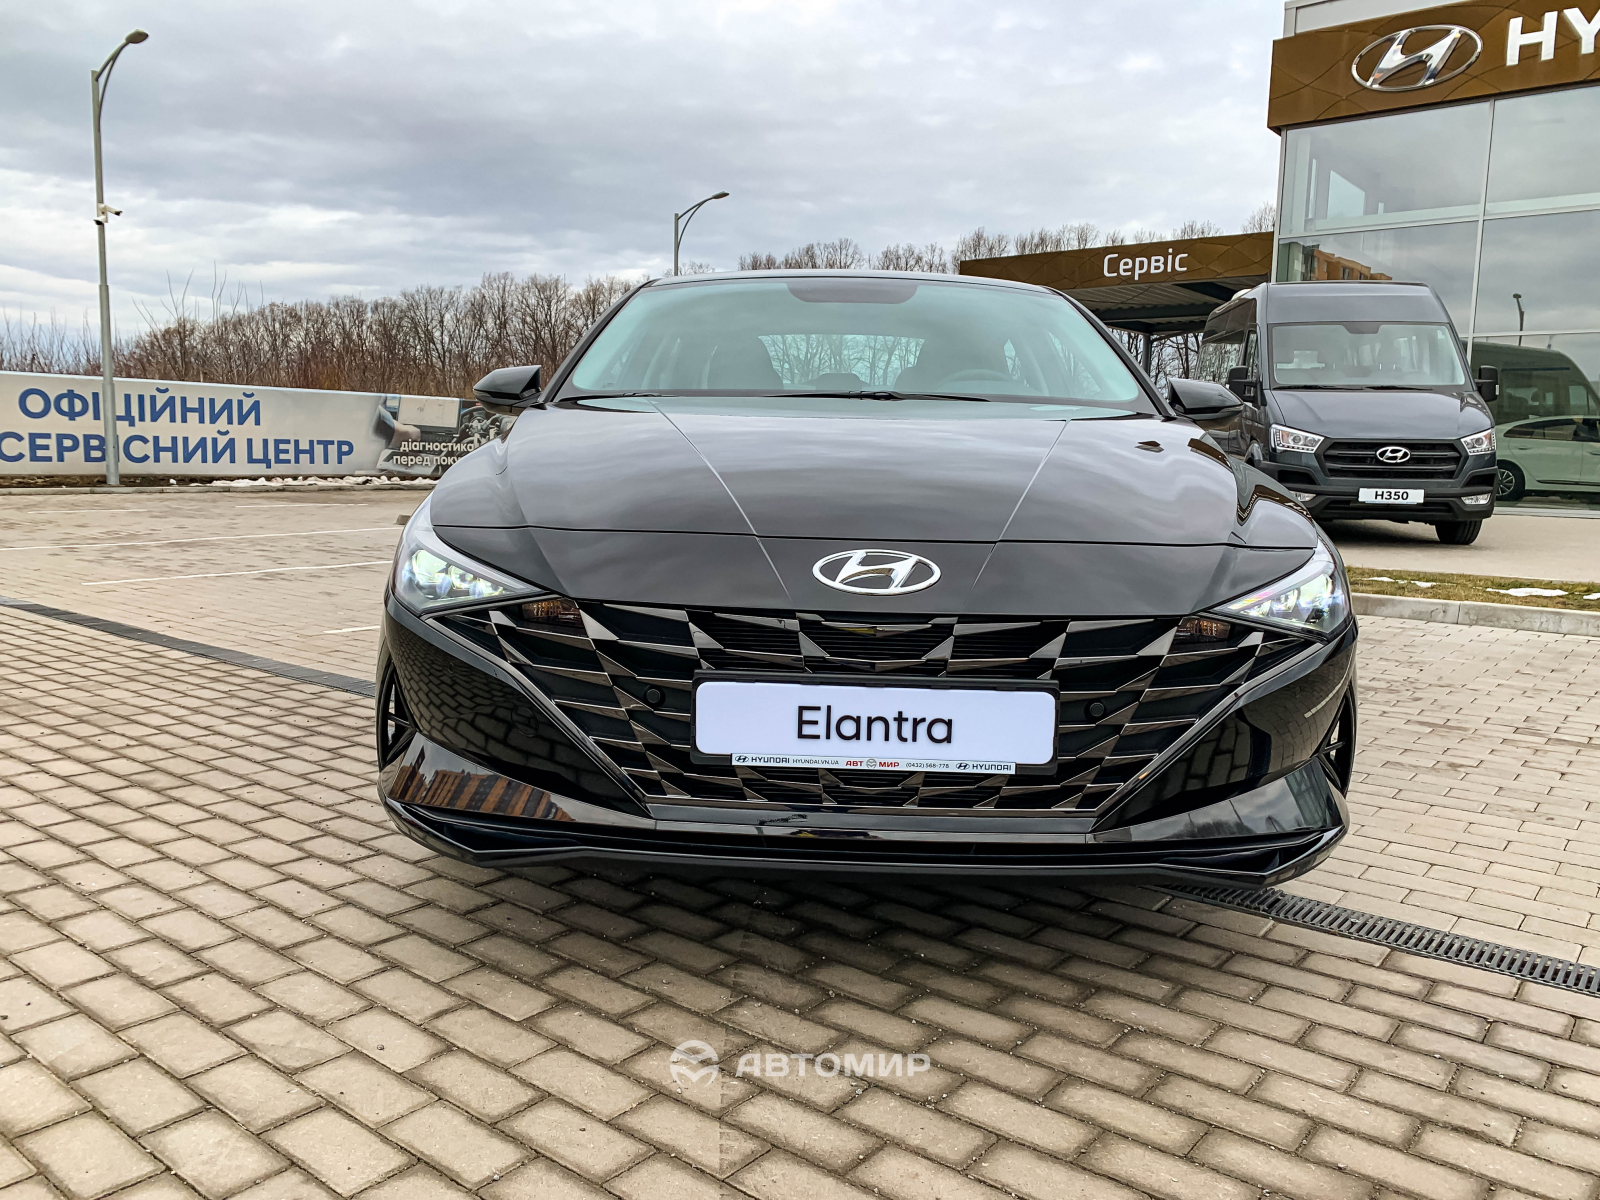 Hyundai Elantra Premium в наявності у автосалоні! | ВІК-Експо - фото 19